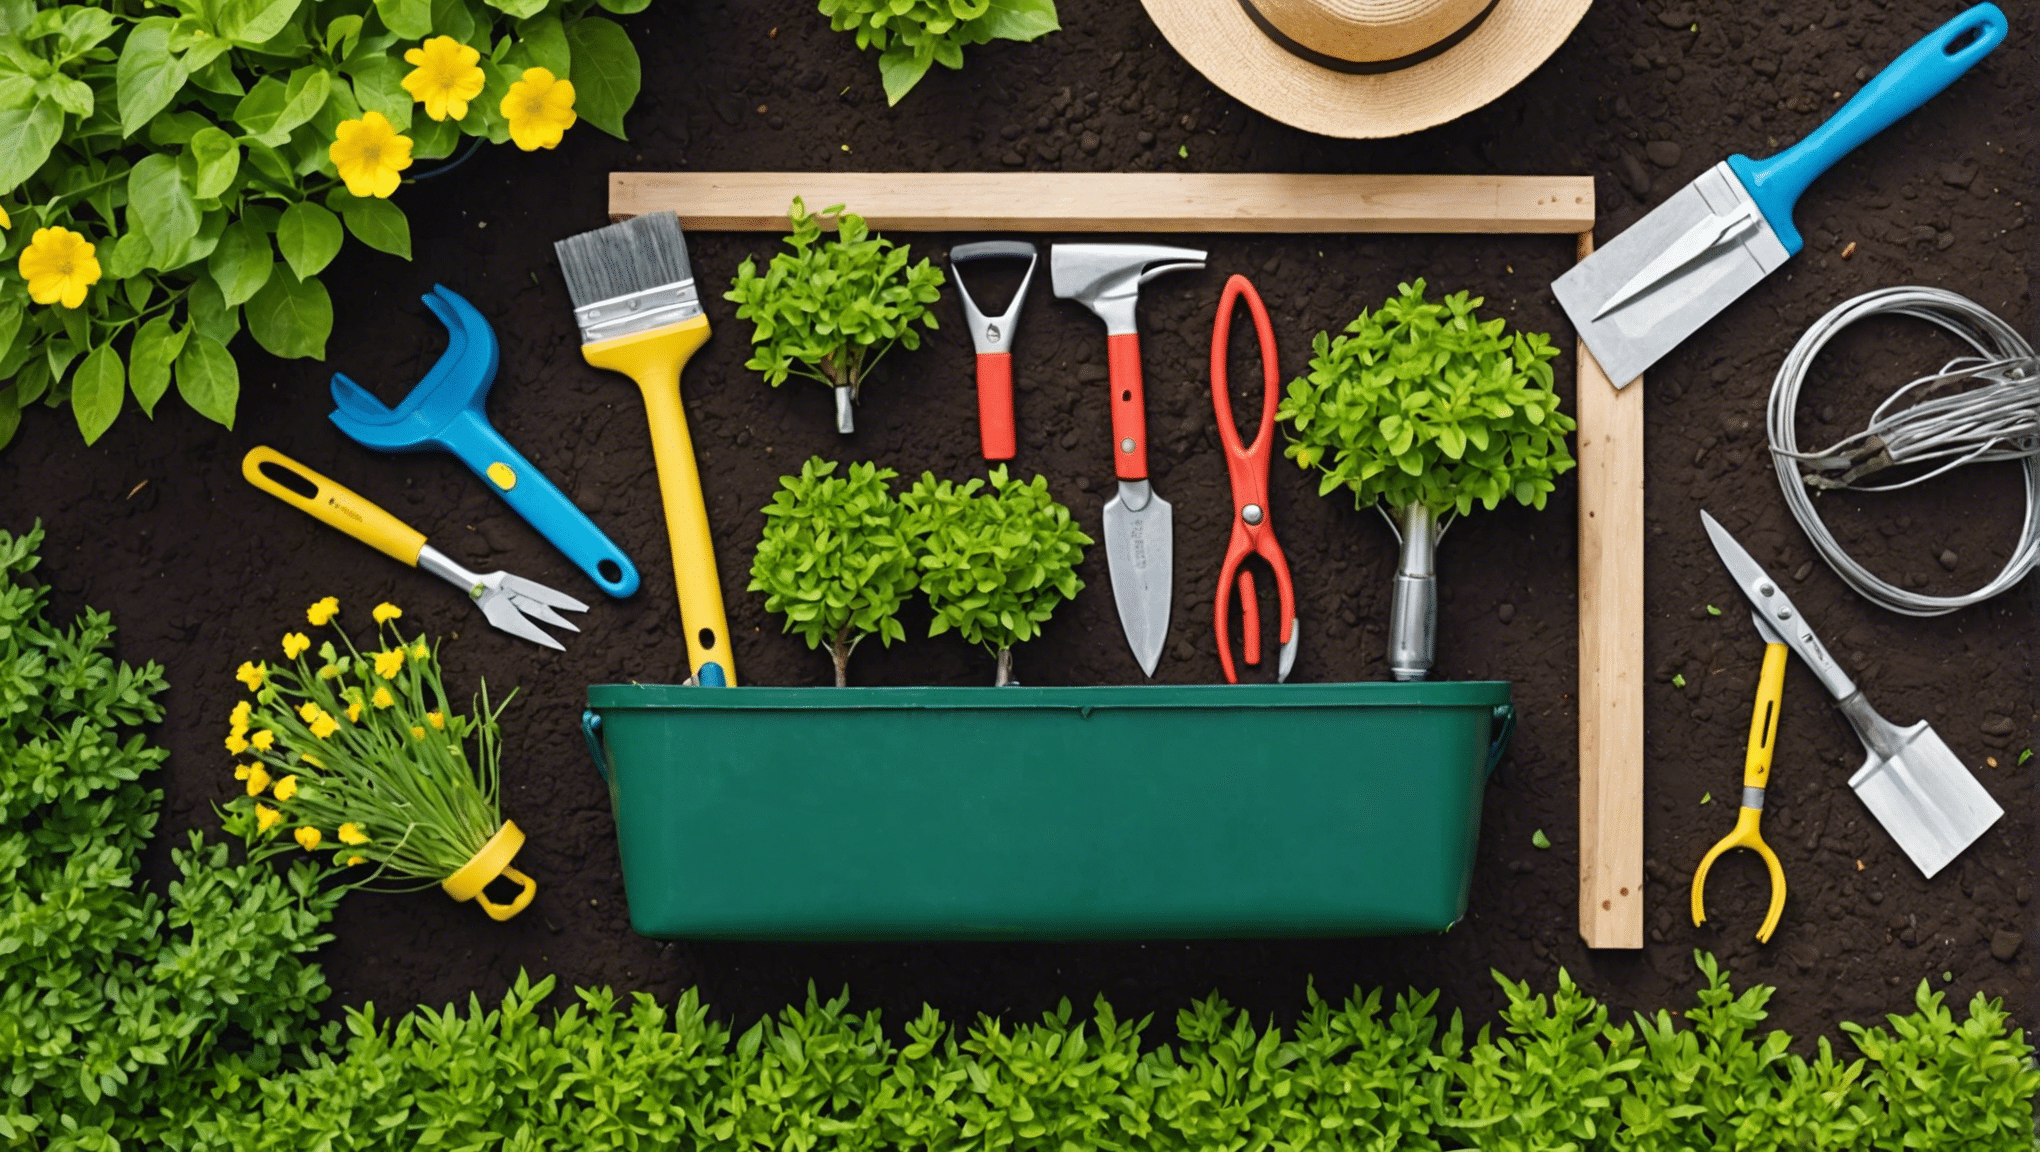 descubra os itens essenciais para levar em sua bolsa de ferramentas de jardinagem e torne sua experiência de jardinagem mais agradável e eficiente. de tesouras de poda a luvas, descubra o que você precisa para uma sessão de jardinagem bem-sucedida.